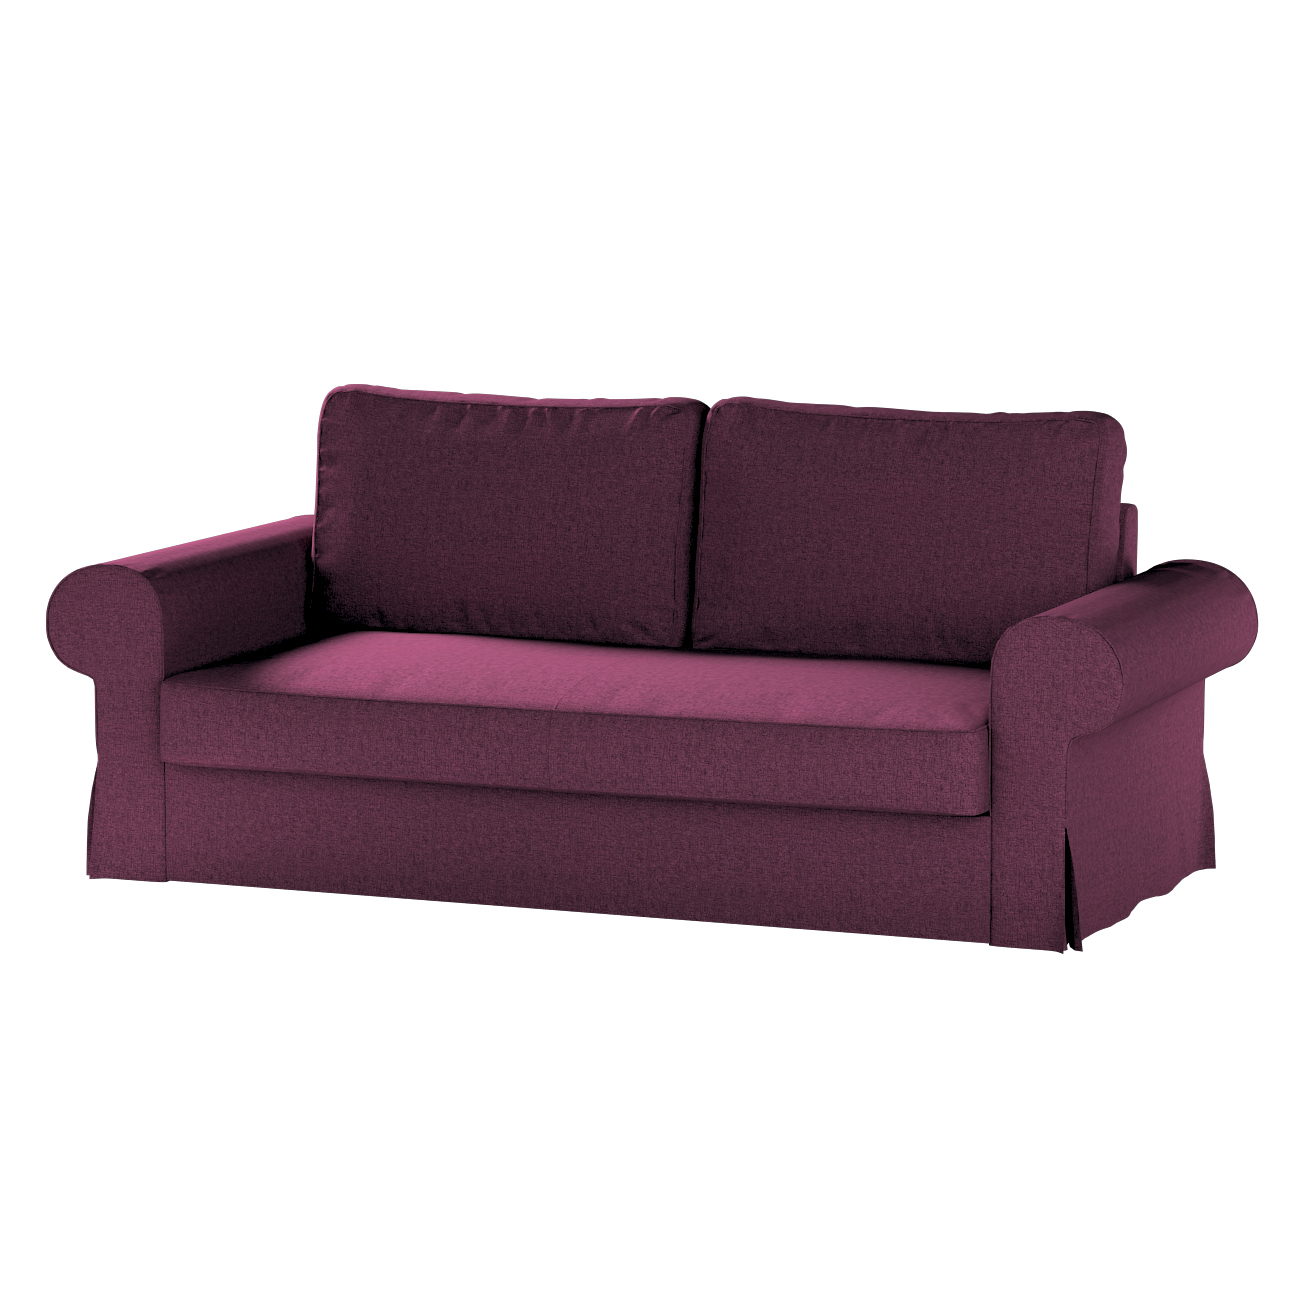 Bezug für Backabro 3-Sitzer Sofa ausklappbar, pflaumenviolett, Bezug für Ba günstig online kaufen